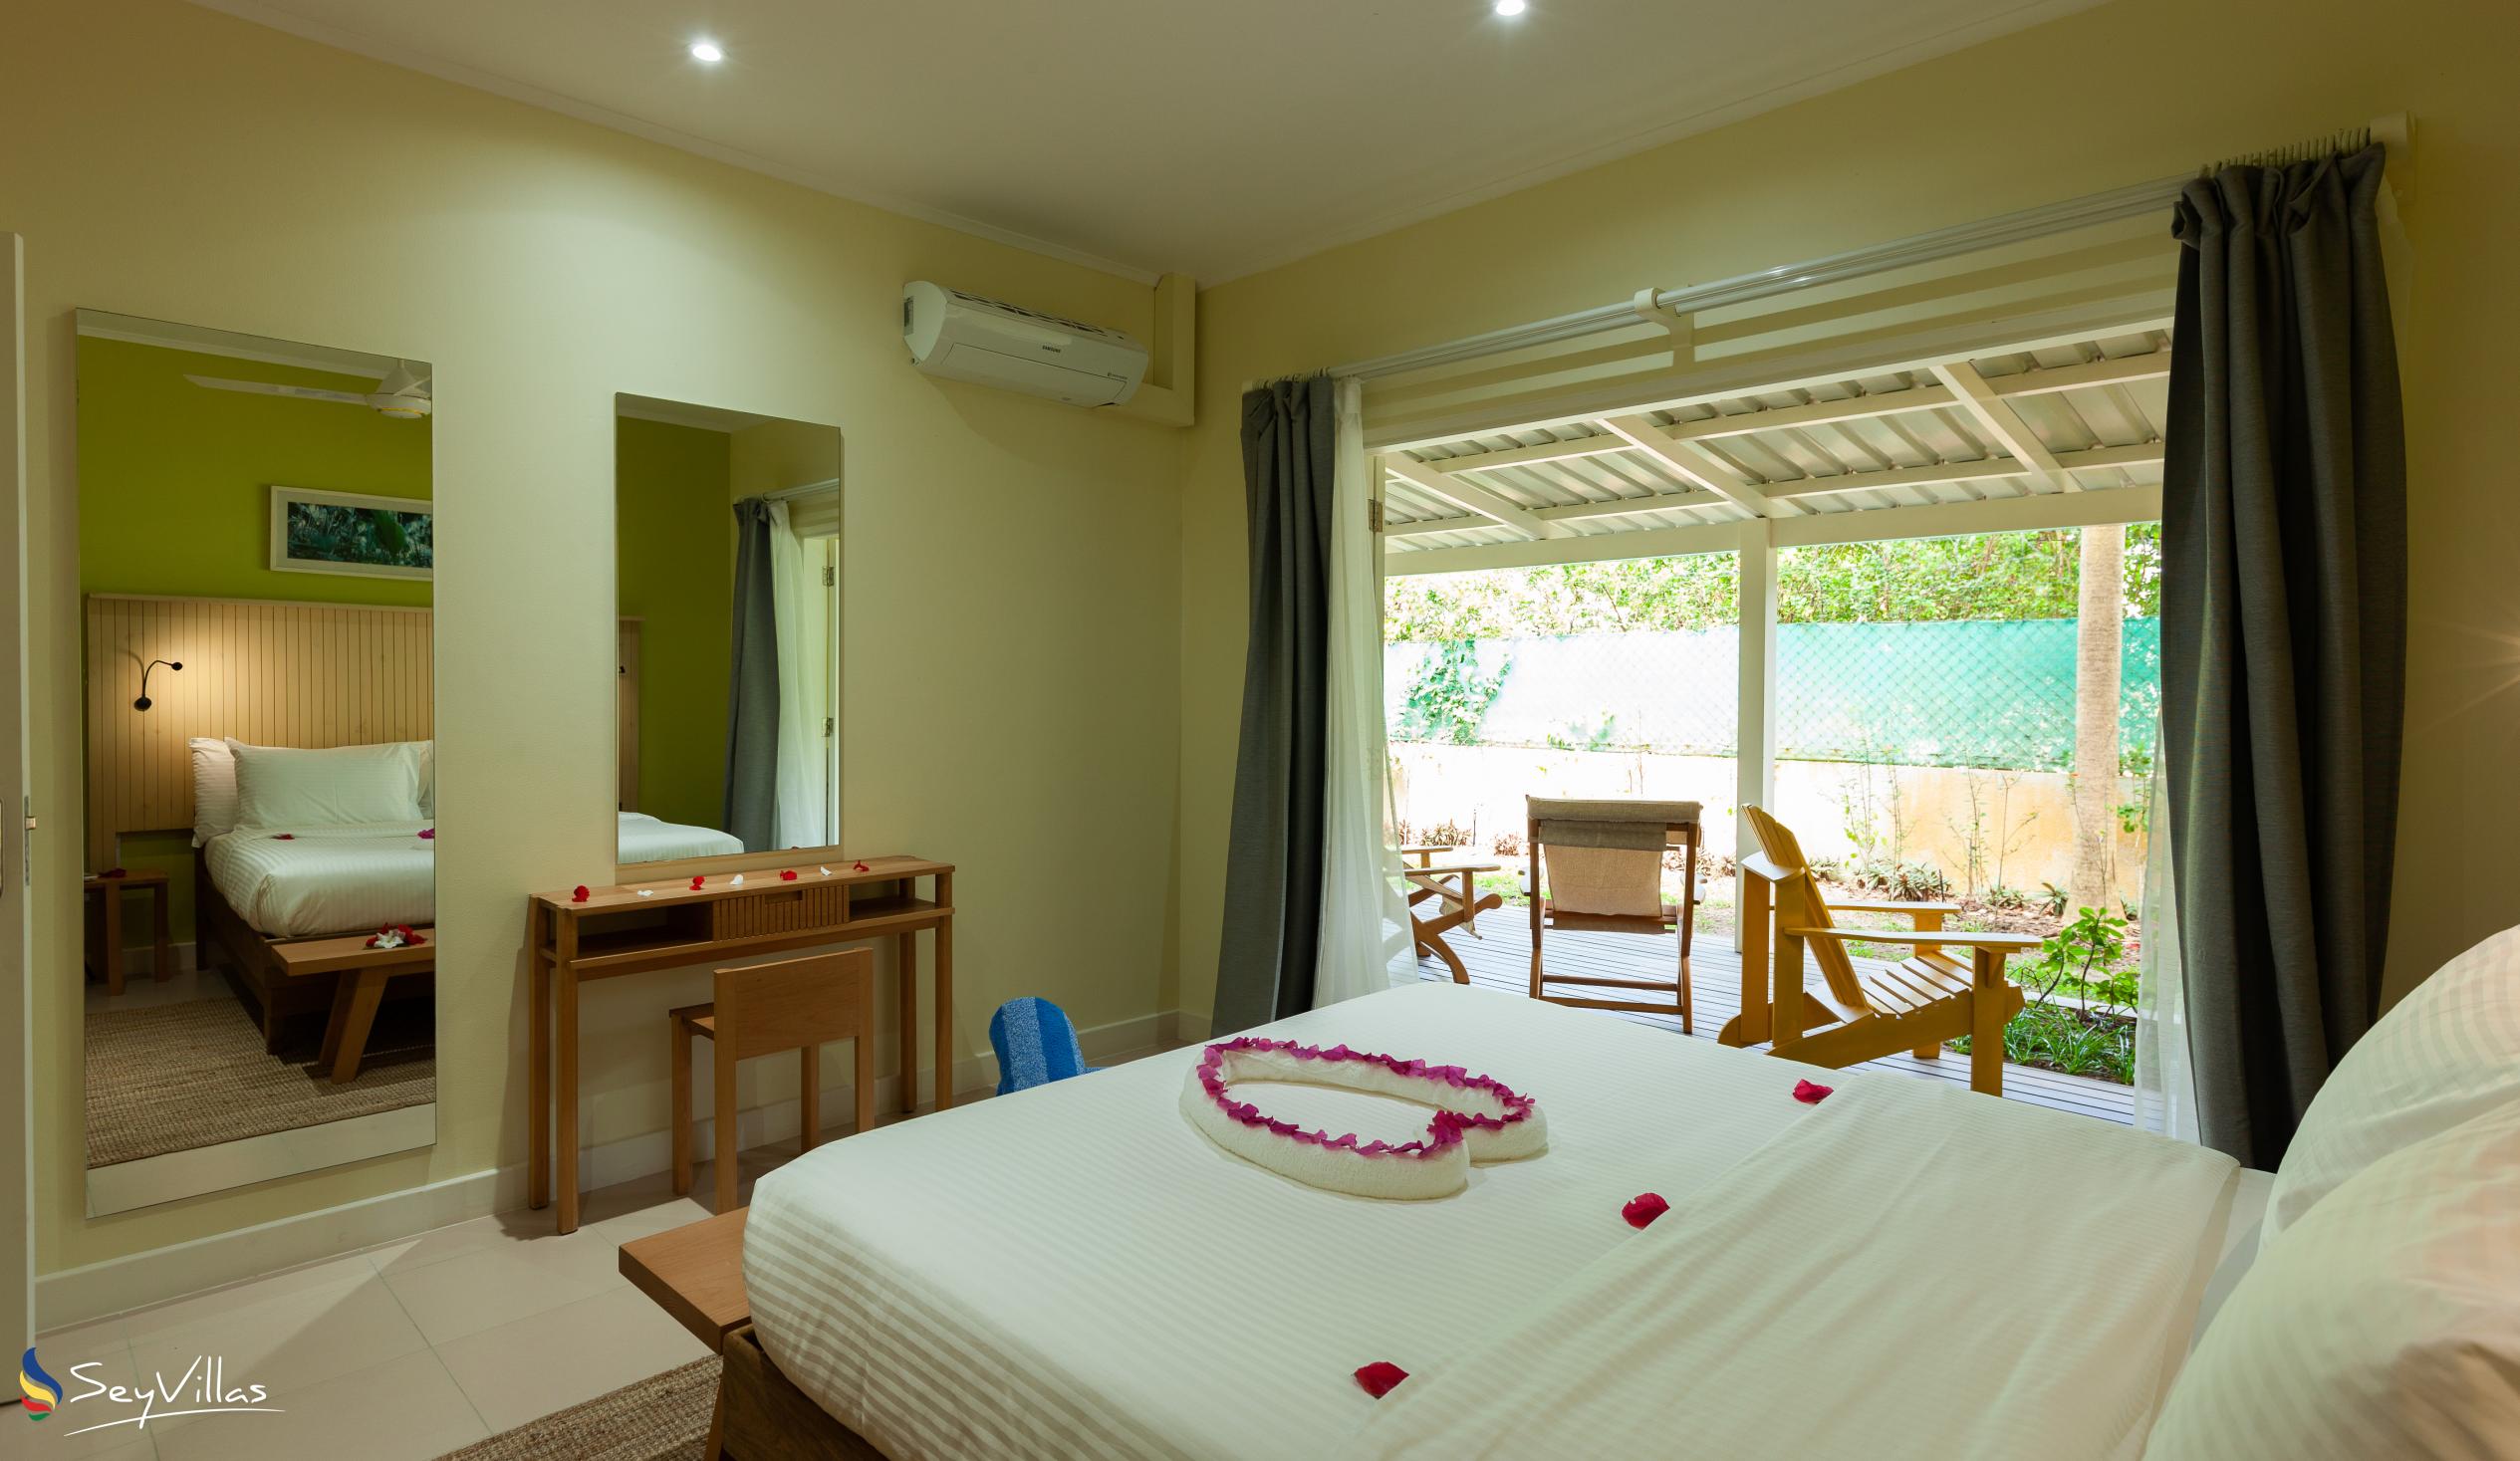 Foto 45: Residence Praslinoise - Familienappartement mit 2 Schlafzimmern (EG) - Praslin (Seychellen)